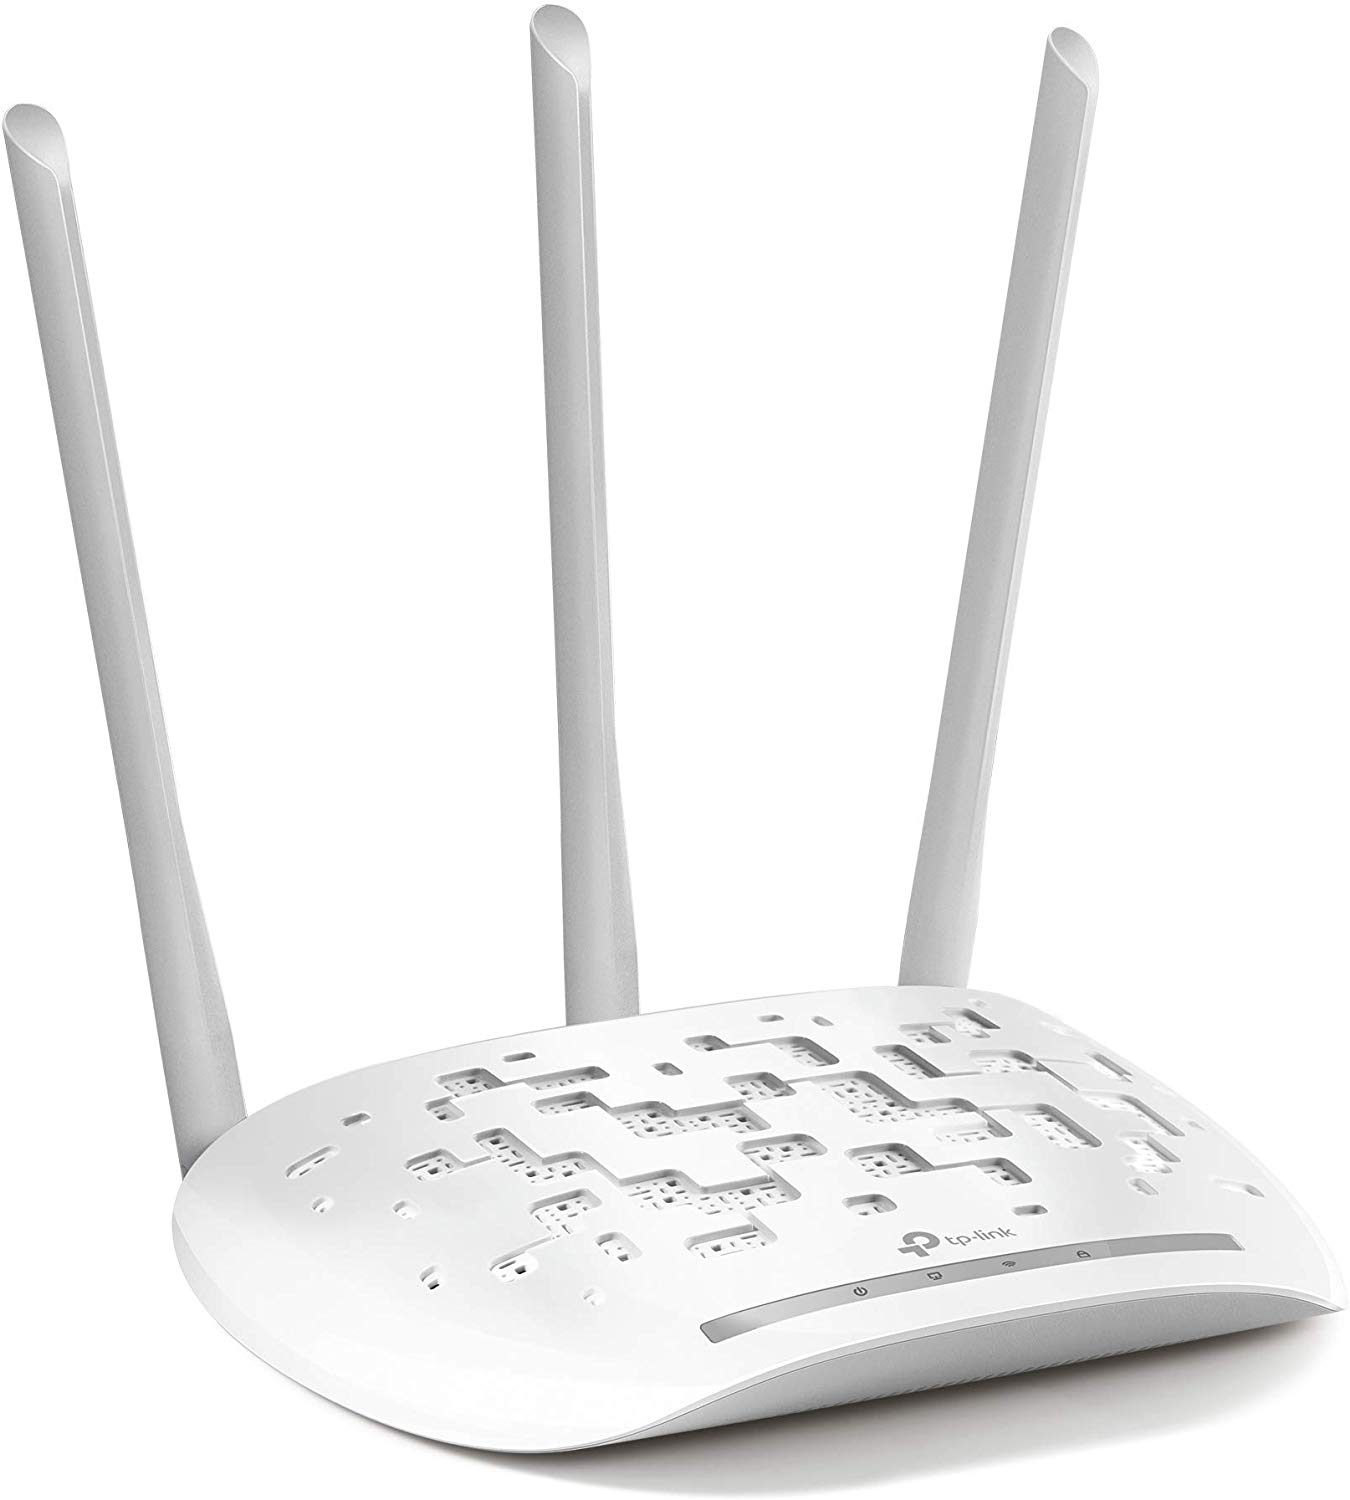 Image 19 : Réseau Wi-Fi : comment améliorer sa connexion et son débit ?